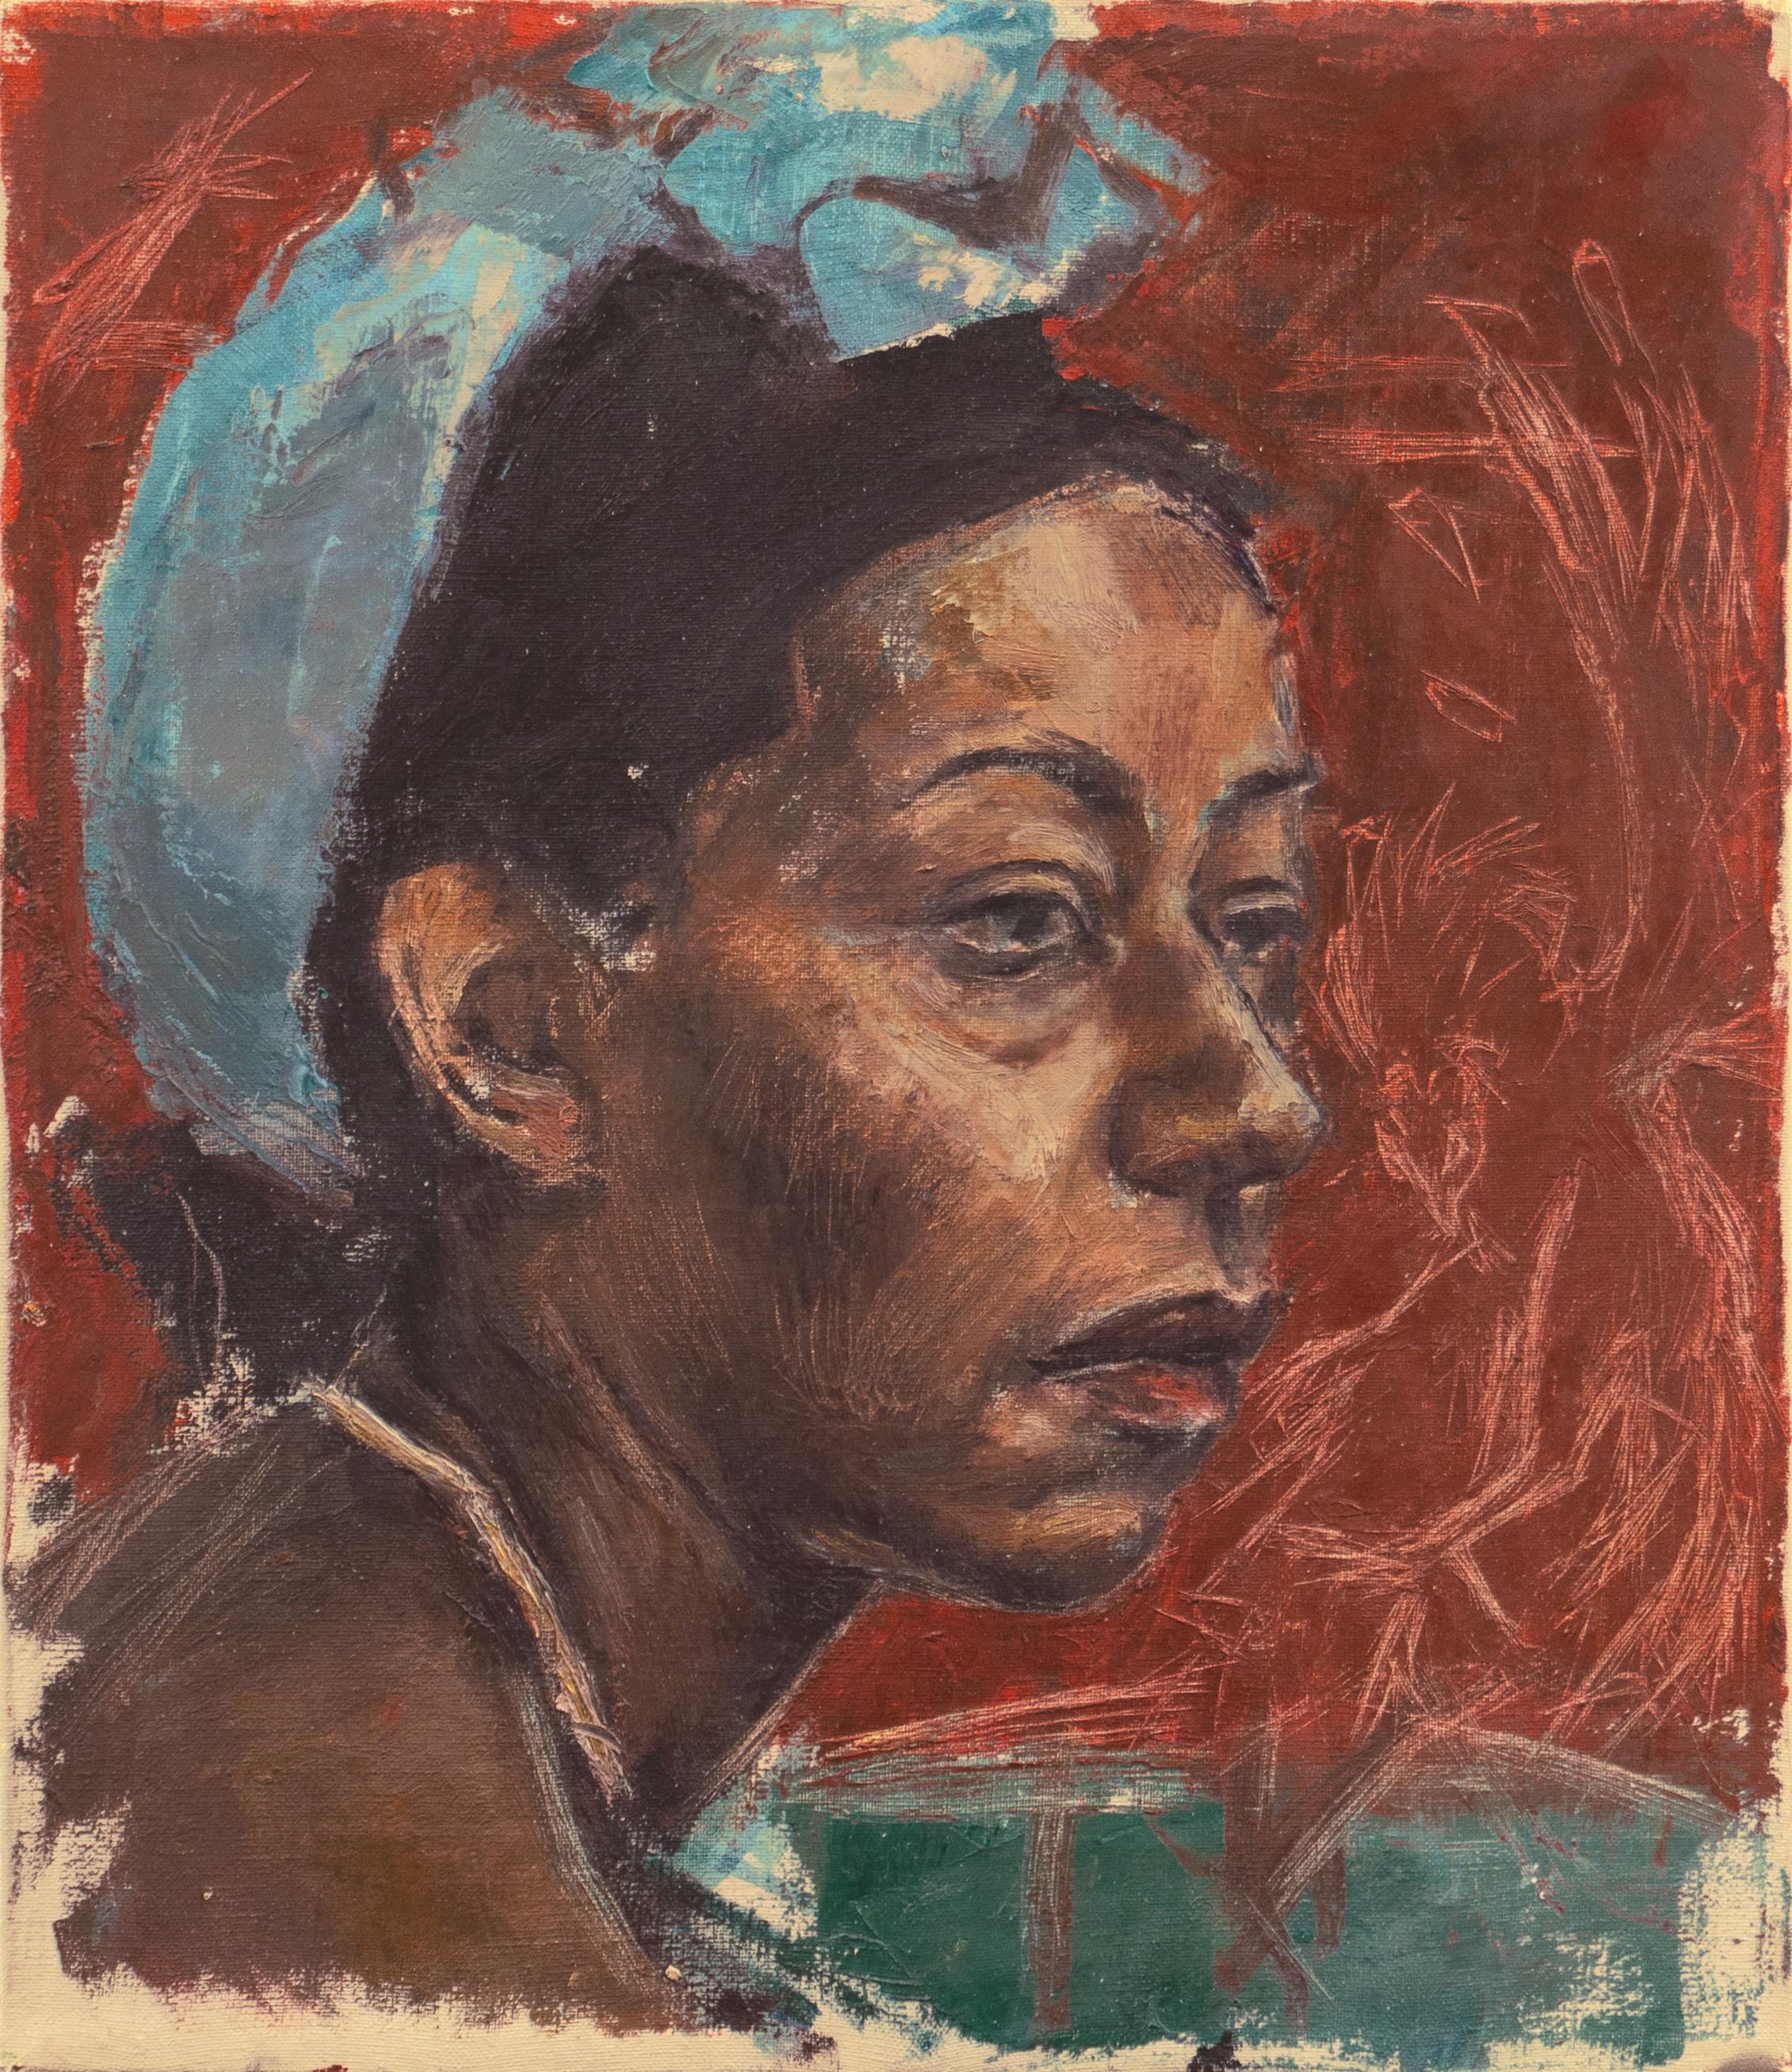 20th century American School Portrait Painting – The Blue Scarf", 1960er Jahre, afroamerikanisches Öl, Studie einer schwarzen Frau, Phoenix